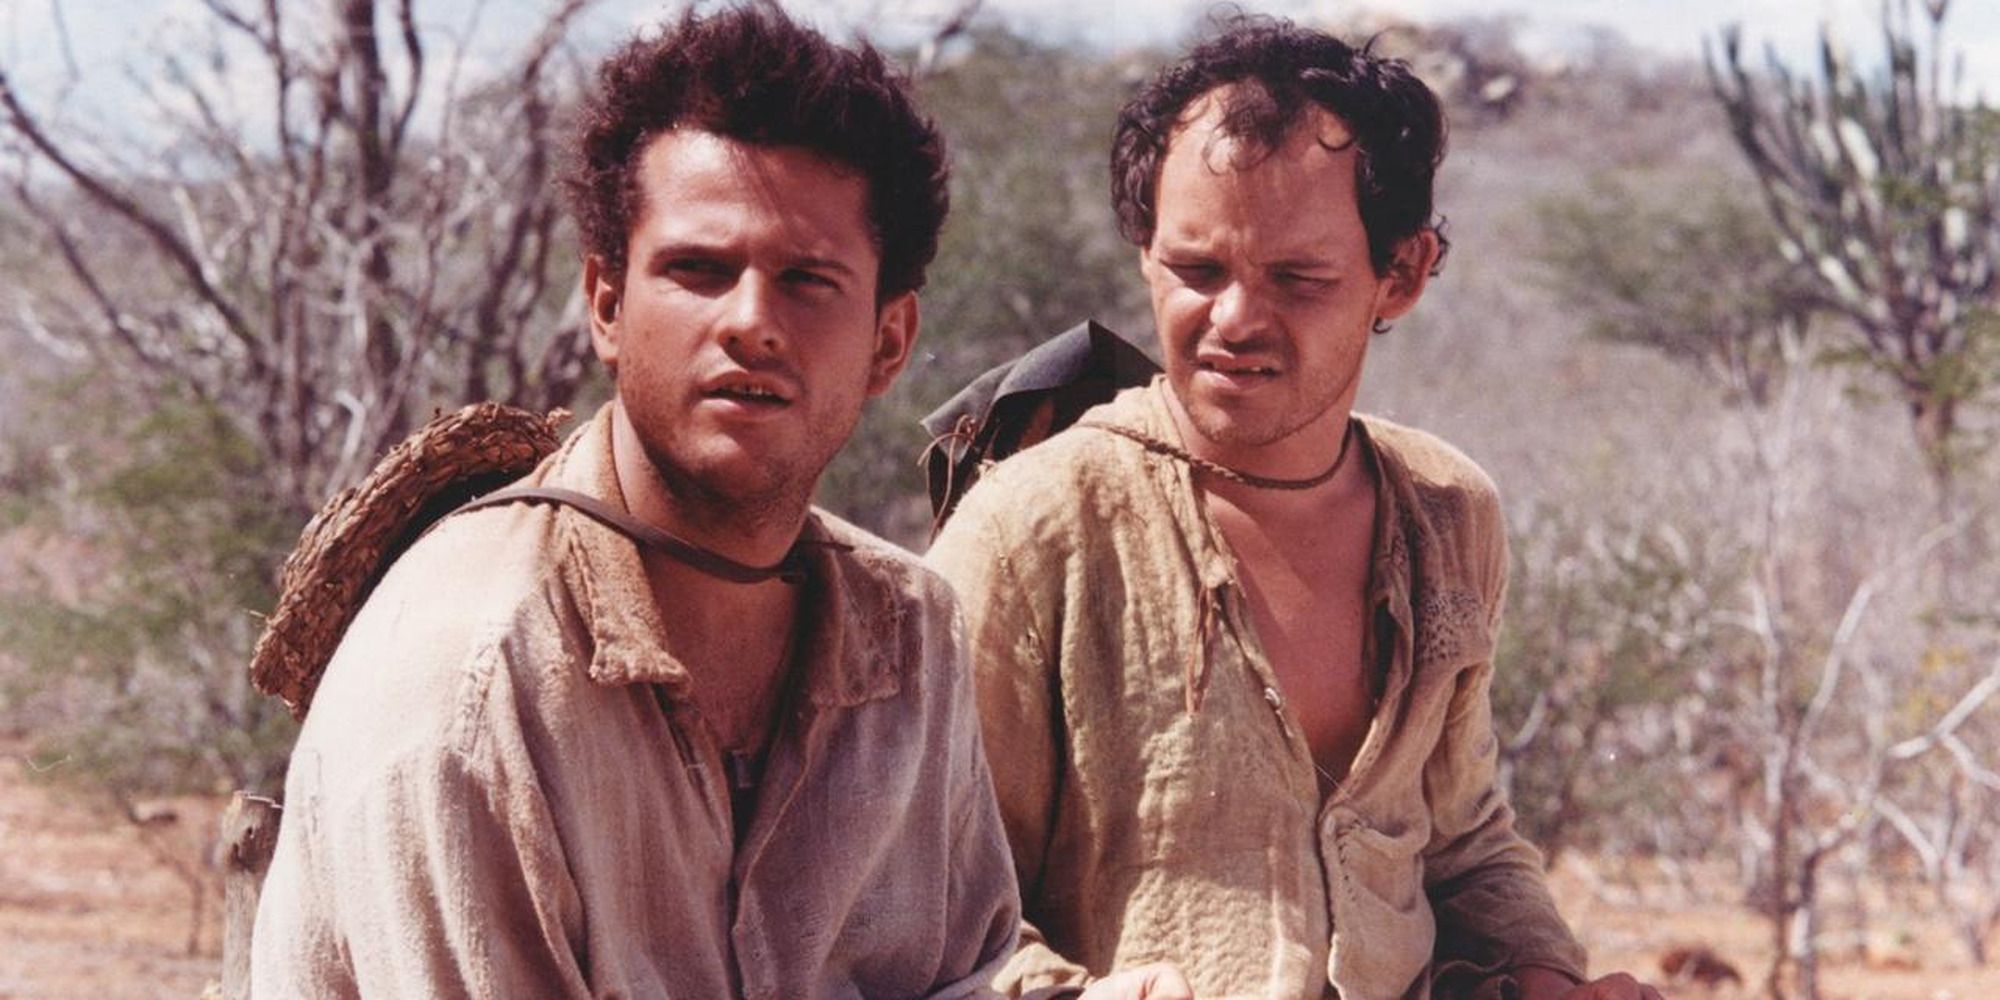 deux hommes aux vêtements en lambeaux au milieu d'un désert